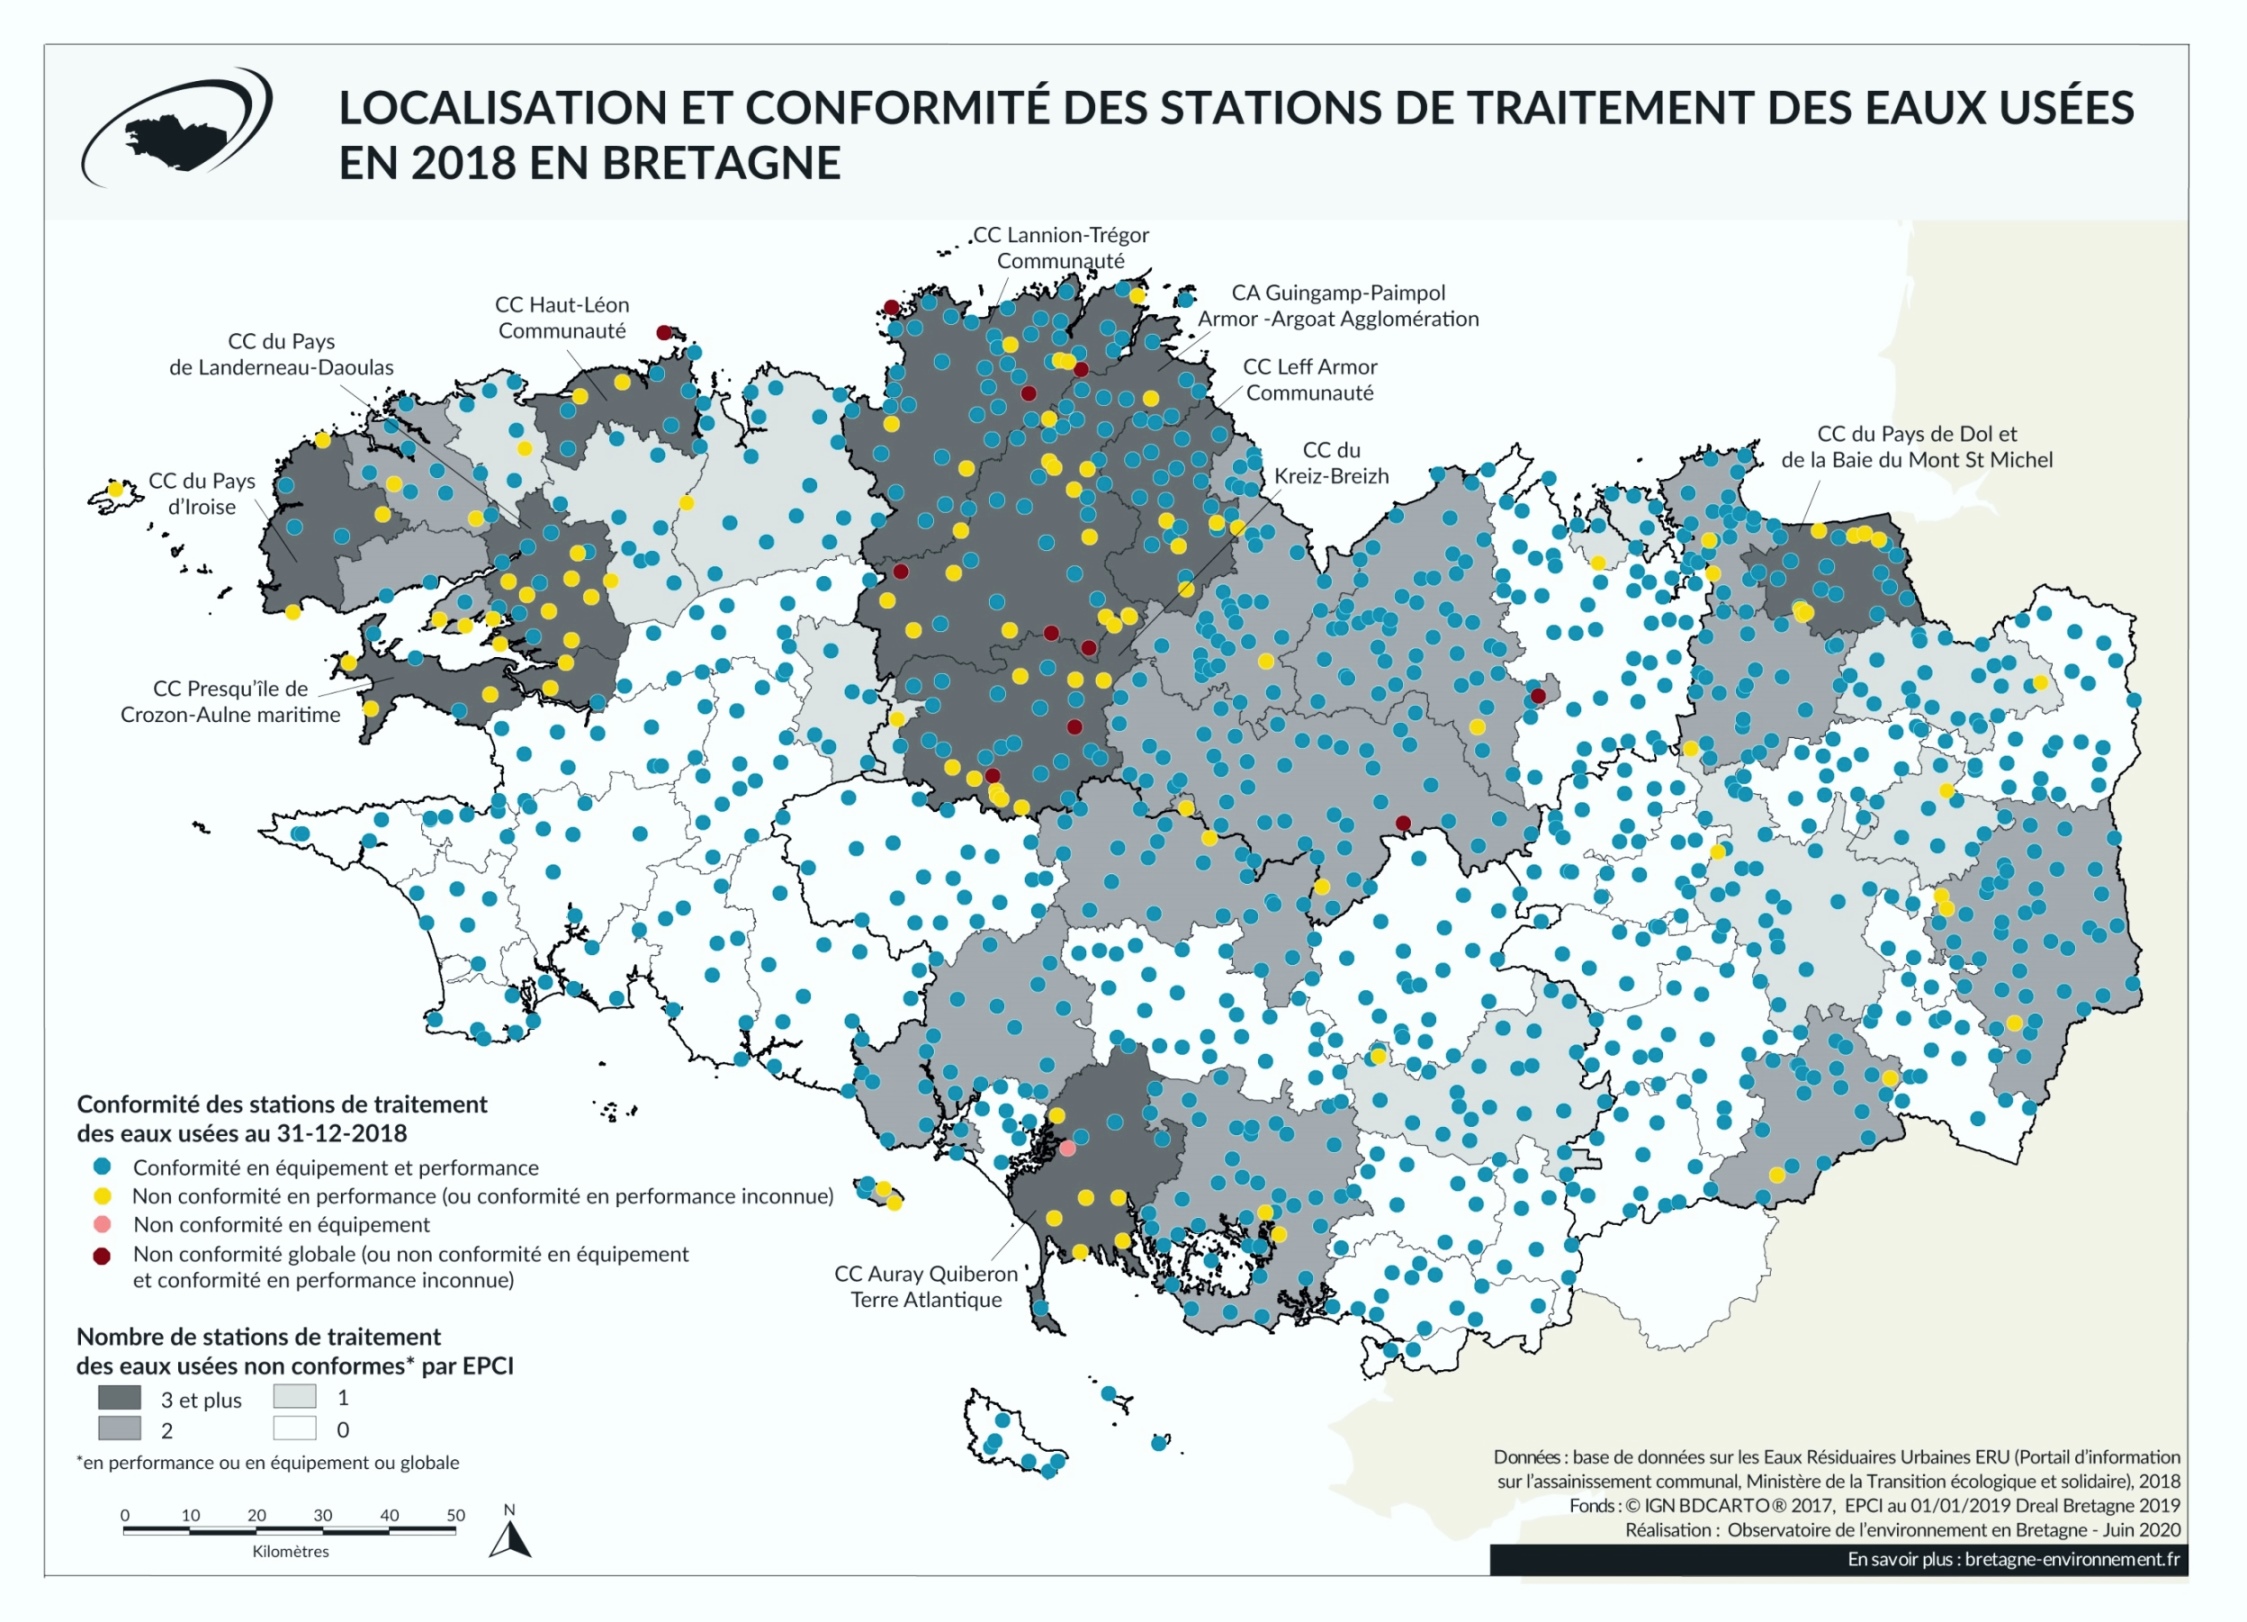 Localisation et conformité des stations de traitement des eaux usées en Bretagne en 2018